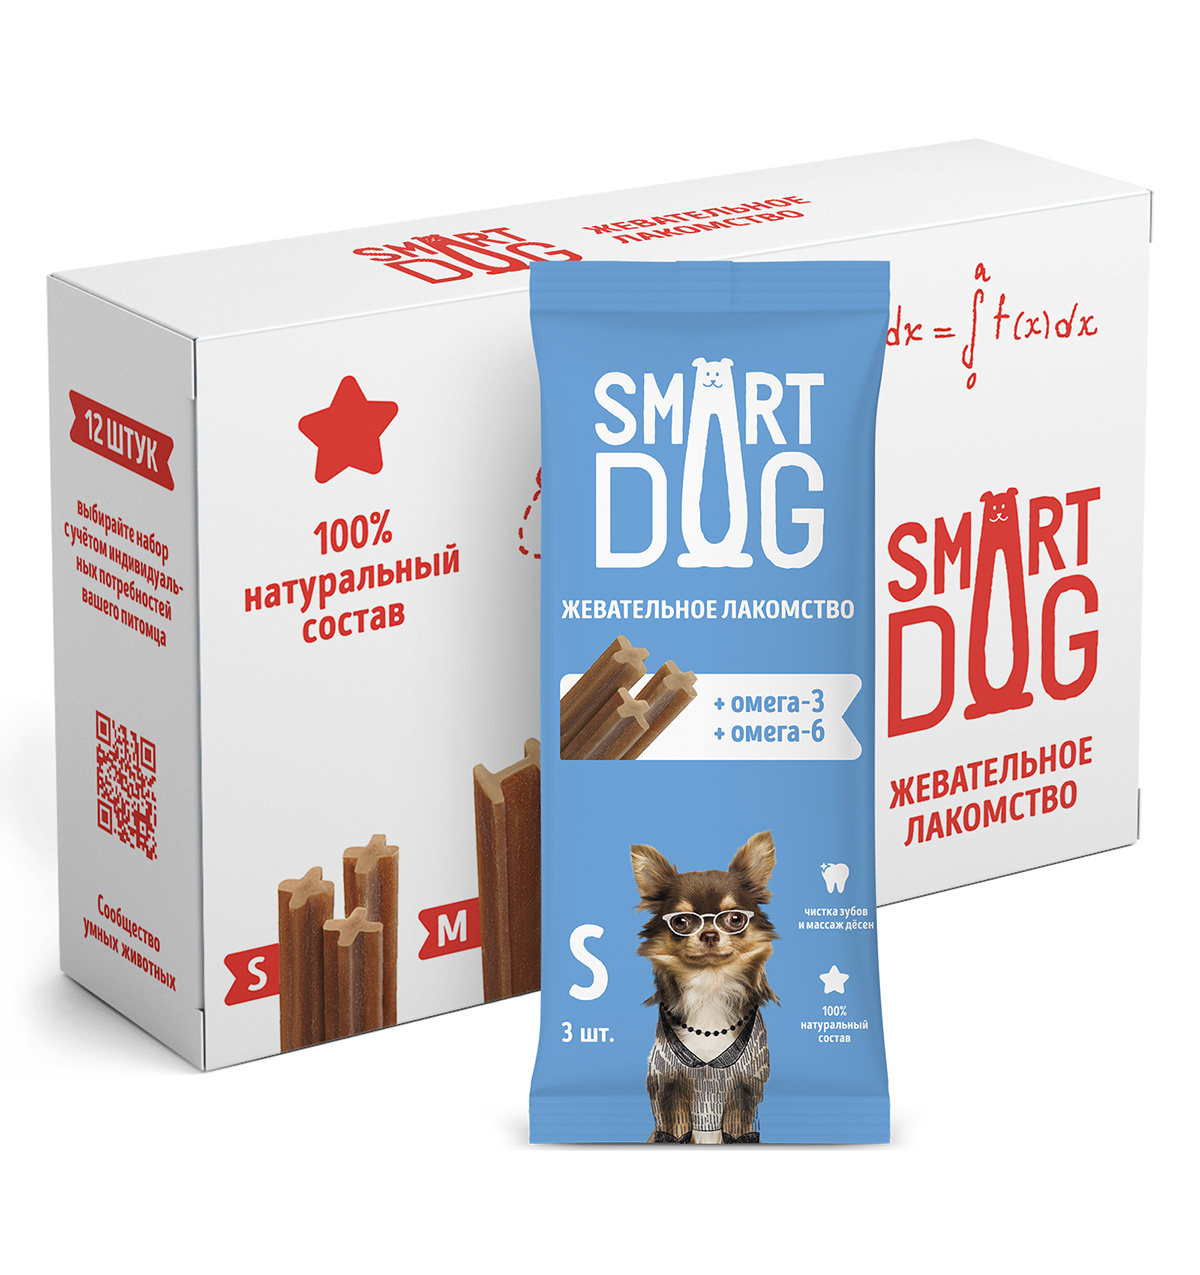 Smart Dog лакомства Smart Dog лакомства Упаковка 12 штук Жевательное лакомство с омега-3 и -6 для собак и щенков (S) smart dog лакомства smart dog лакомства жевательное лакомство с витаминами и минералами для собак и щенков s